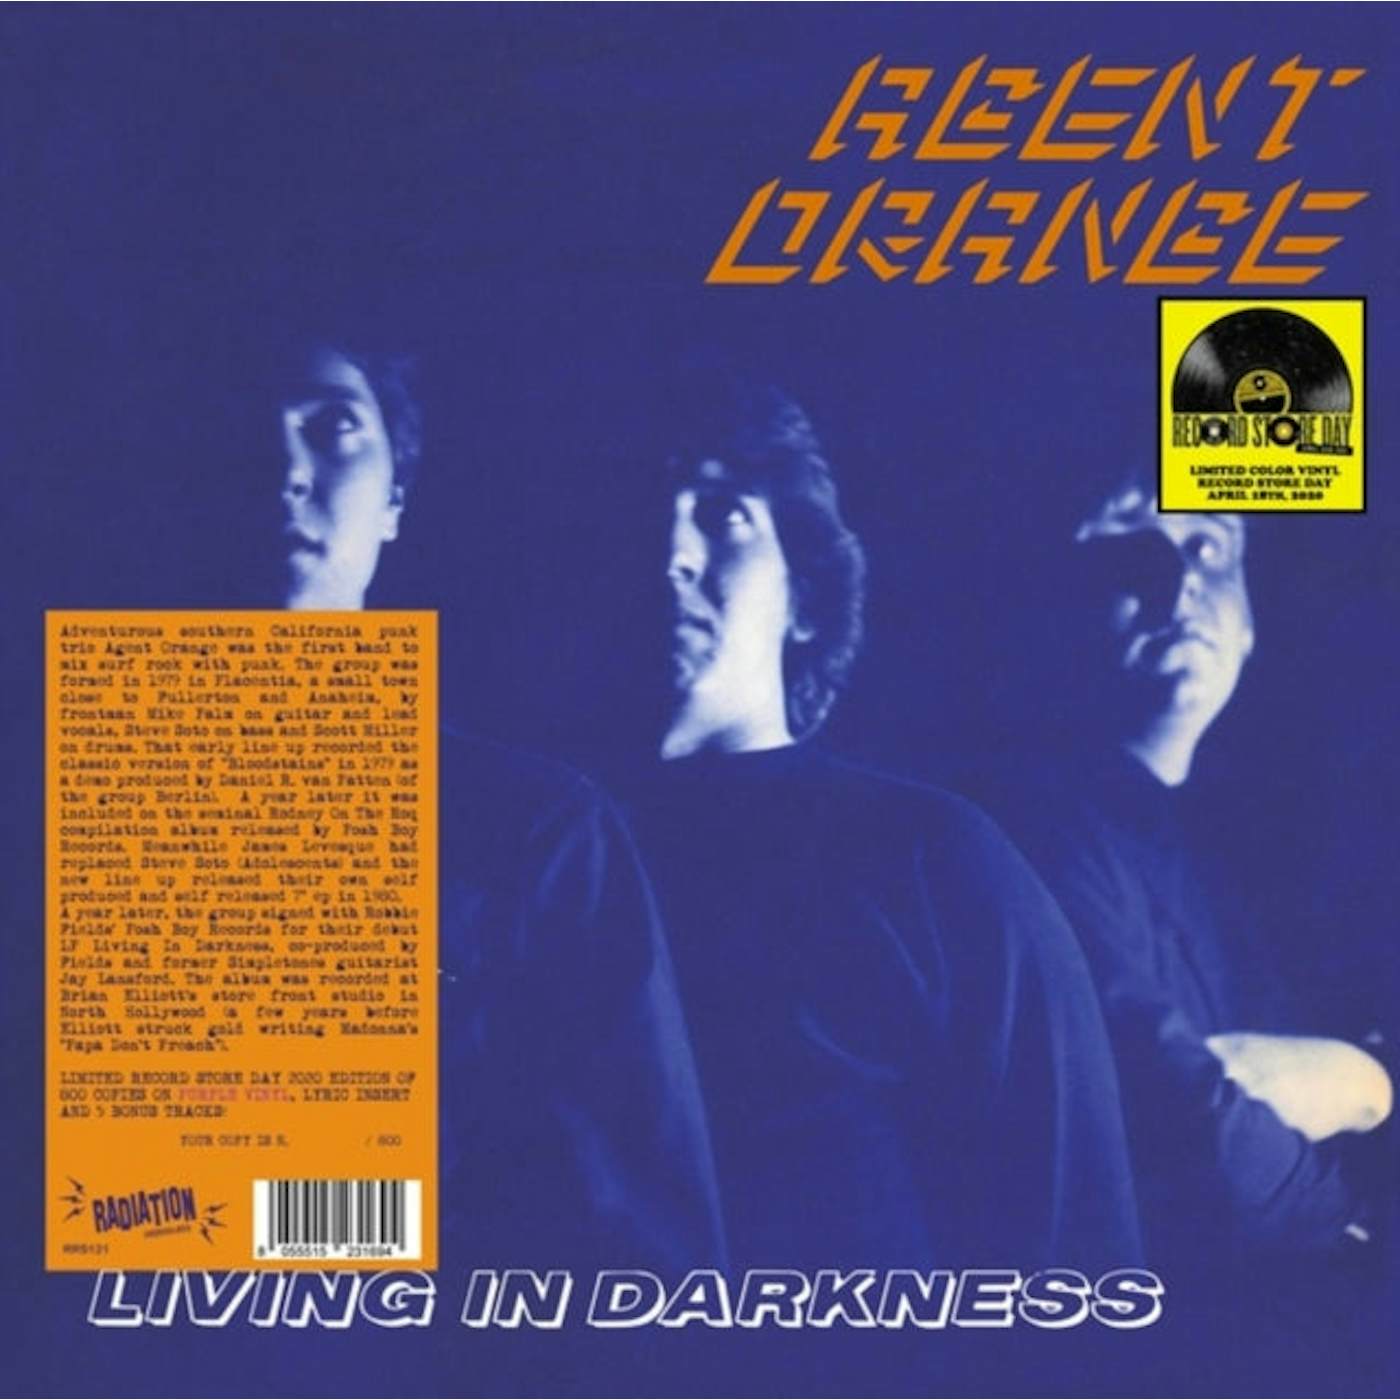  Agent Orange LP - Living In Darkness (Vinyl)